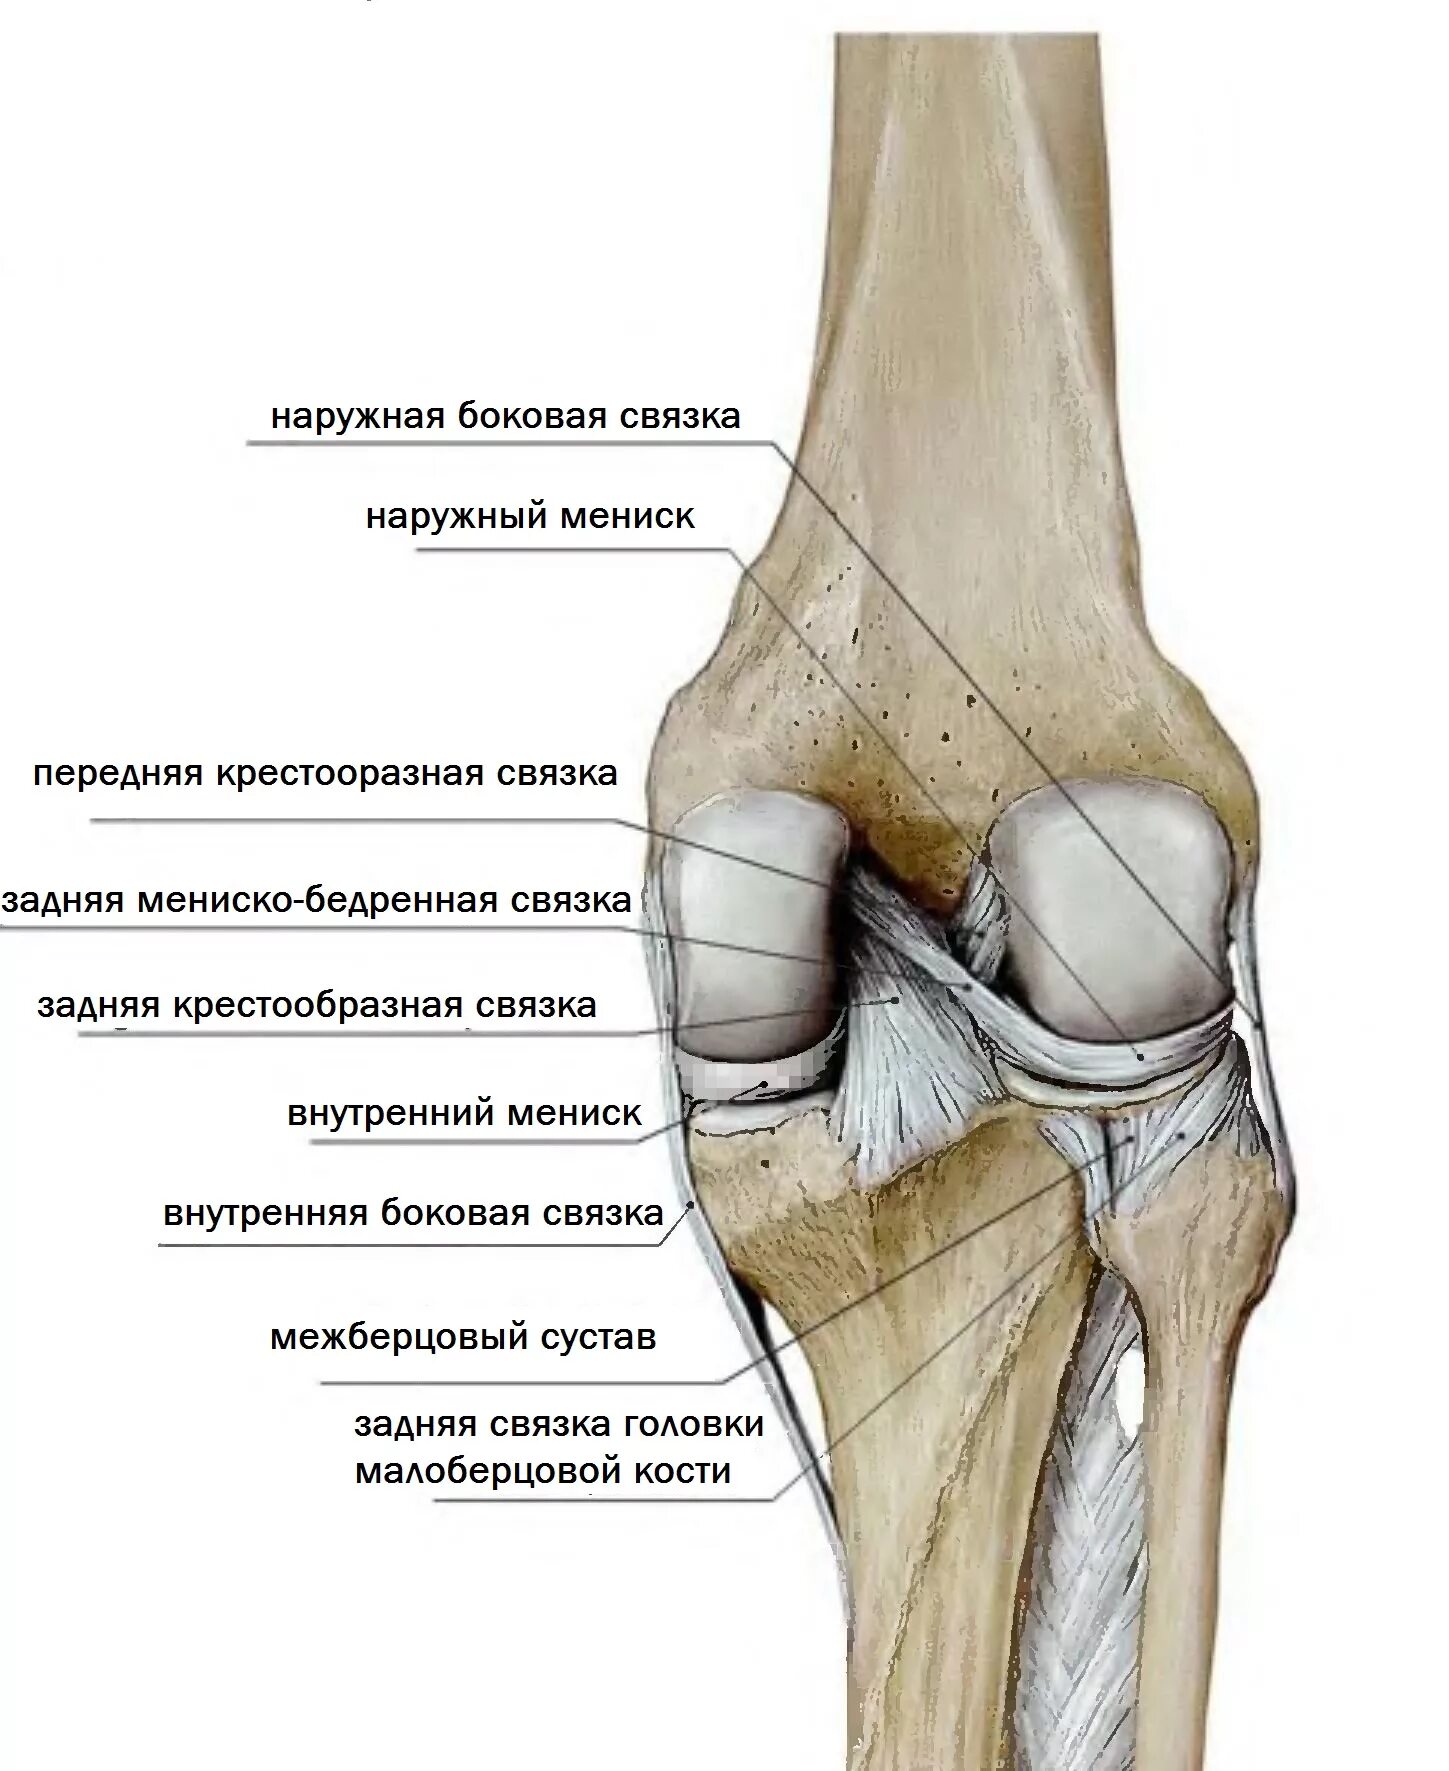 Задний мыщелок. Суставная поверхность надколенника медиально. Большеберцовая кость и коленный сустав. Задняя связка головки малоберцовой кости. Коленный сустав малоберцовая кость.